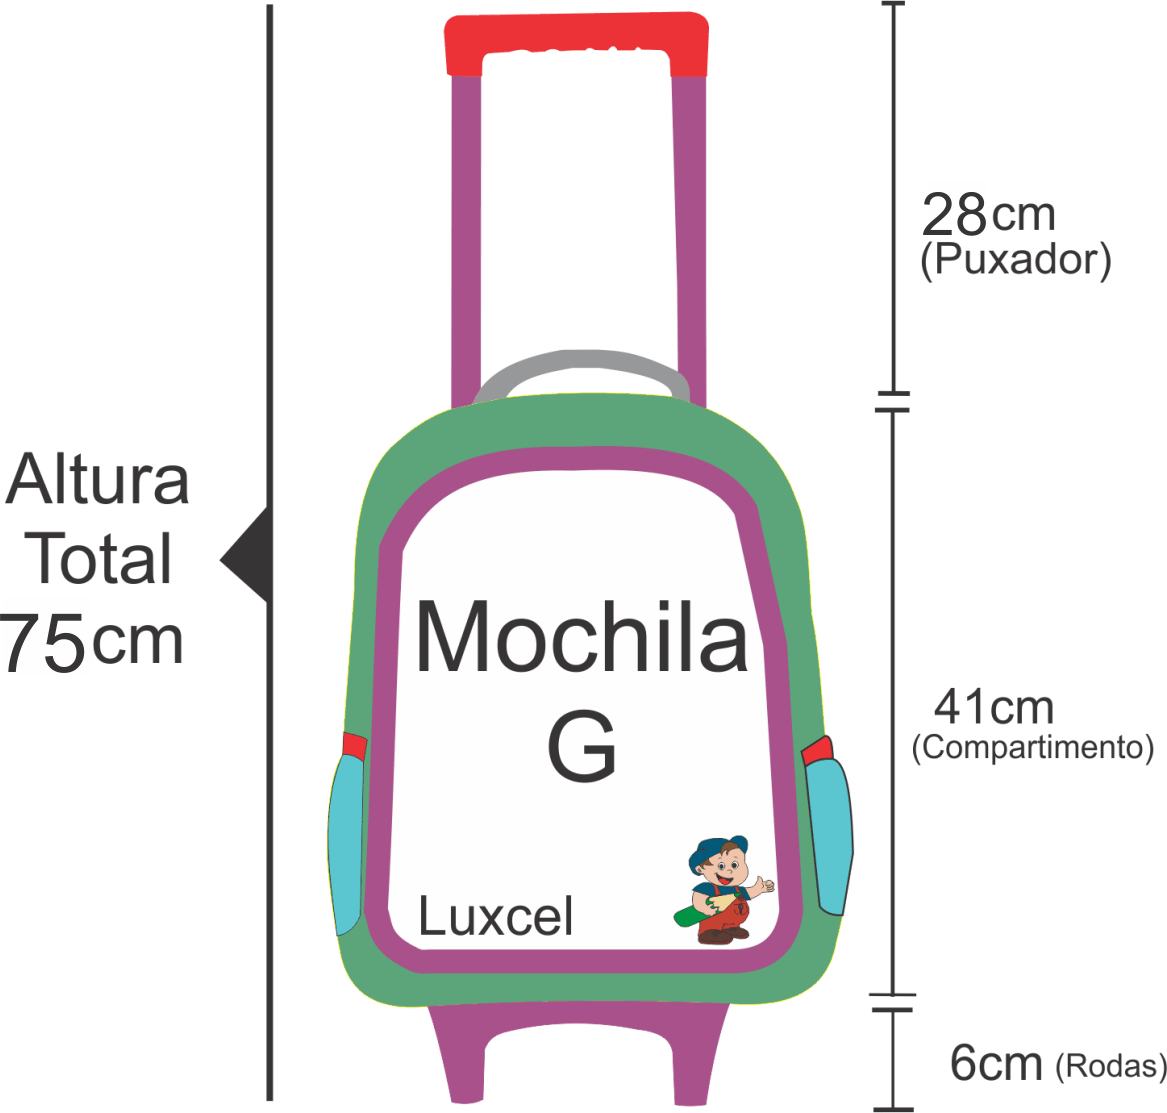 Medidas da altura da mochila de rodinha Luxcel